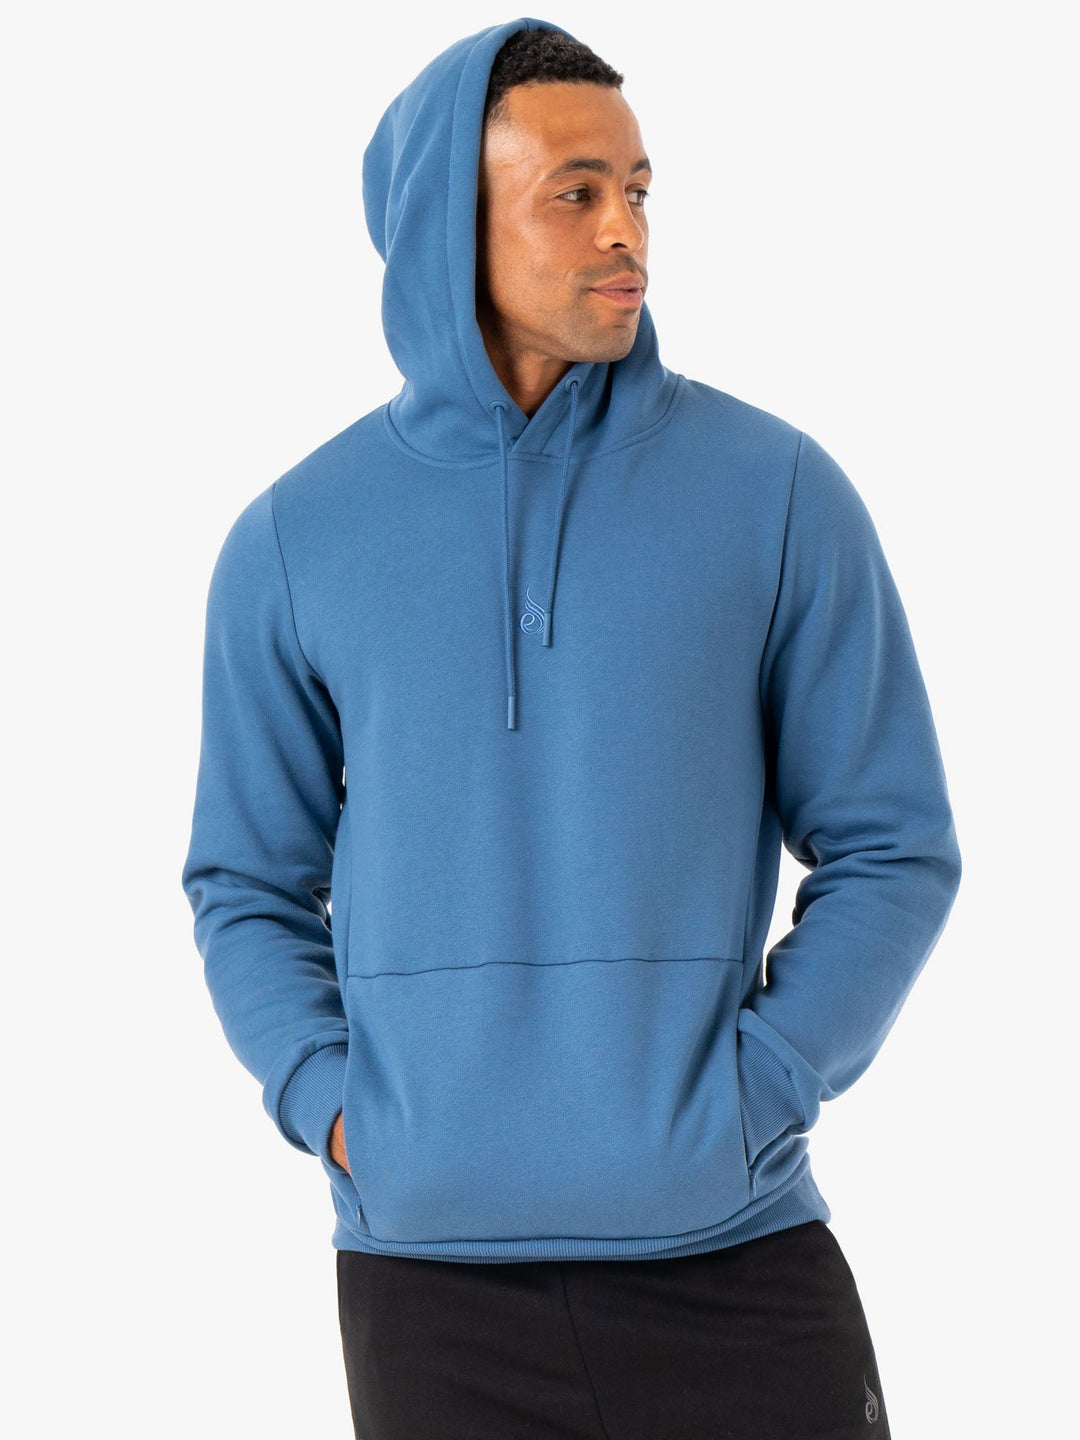 Restore Pullover Hoodie - Blue Clothing Ryderwear 